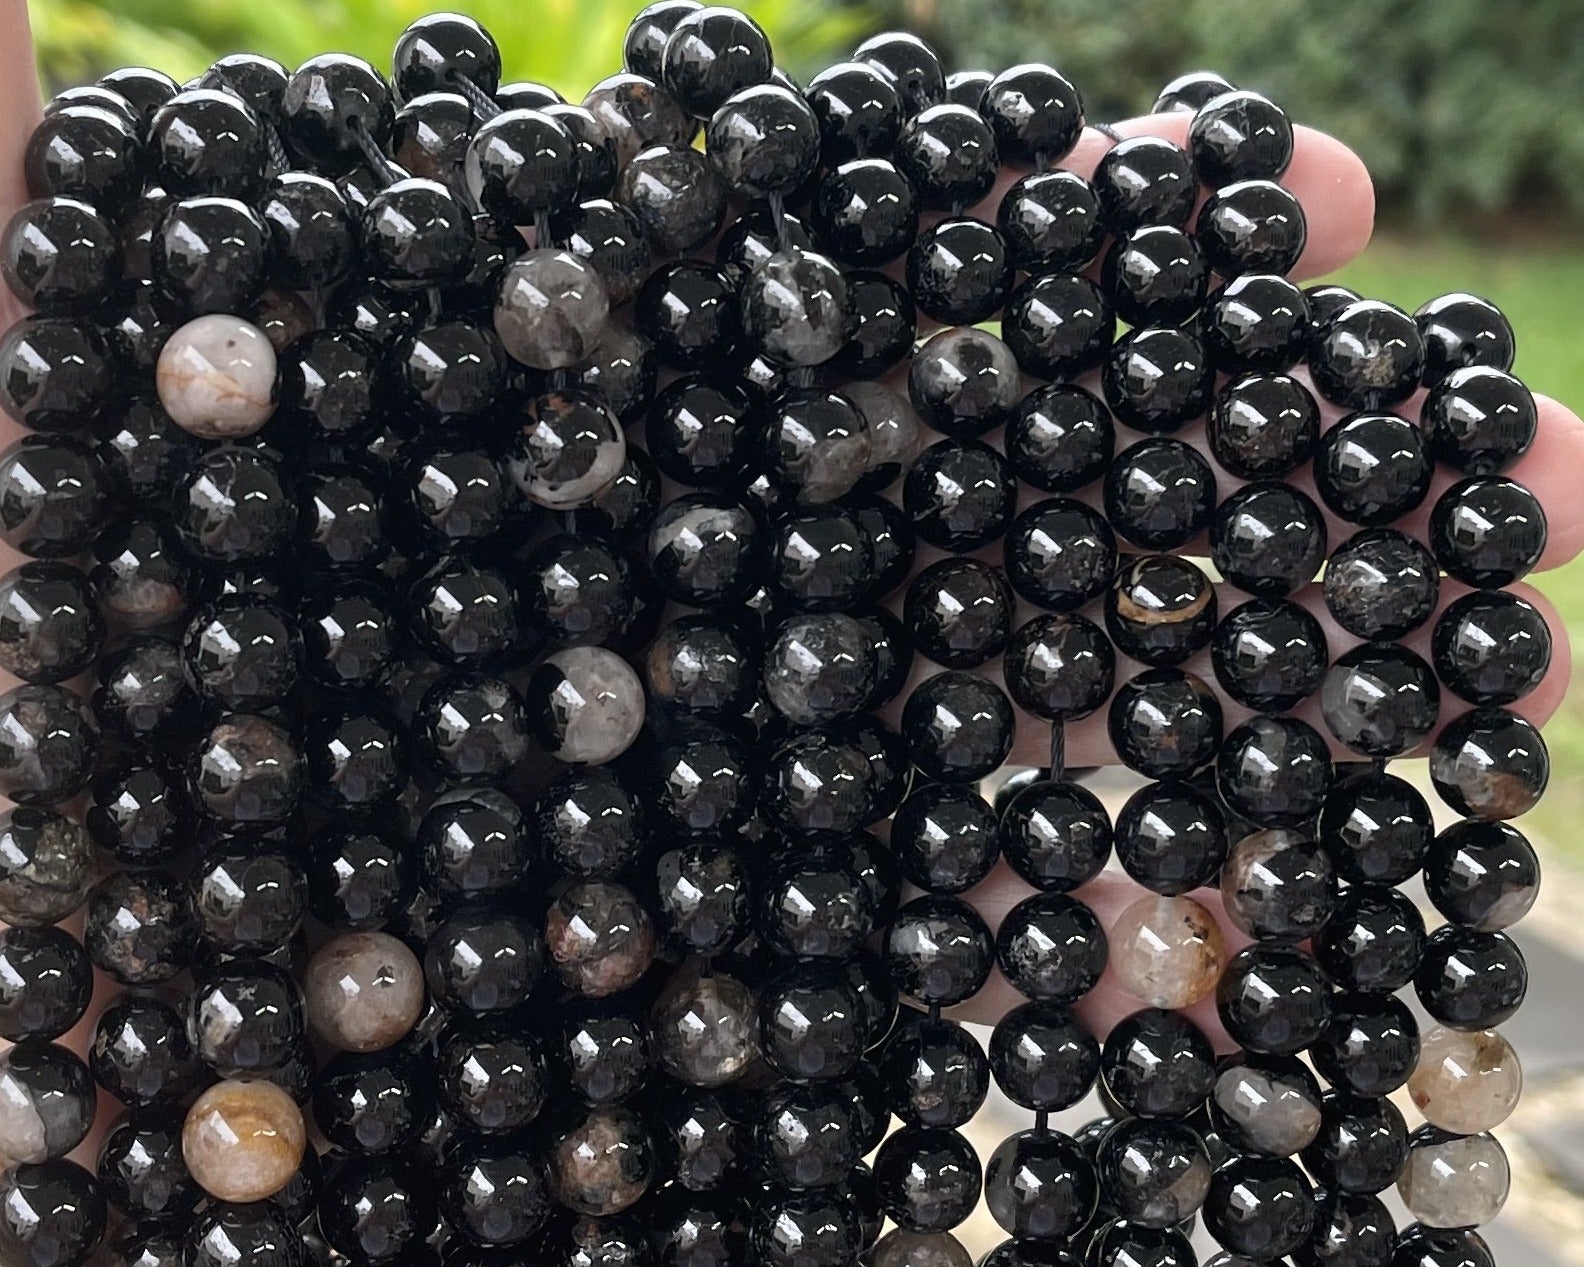 Black Tourmaline in Quartz and Iron Matrix 10mm round natural gemstone beads 15.5" strand